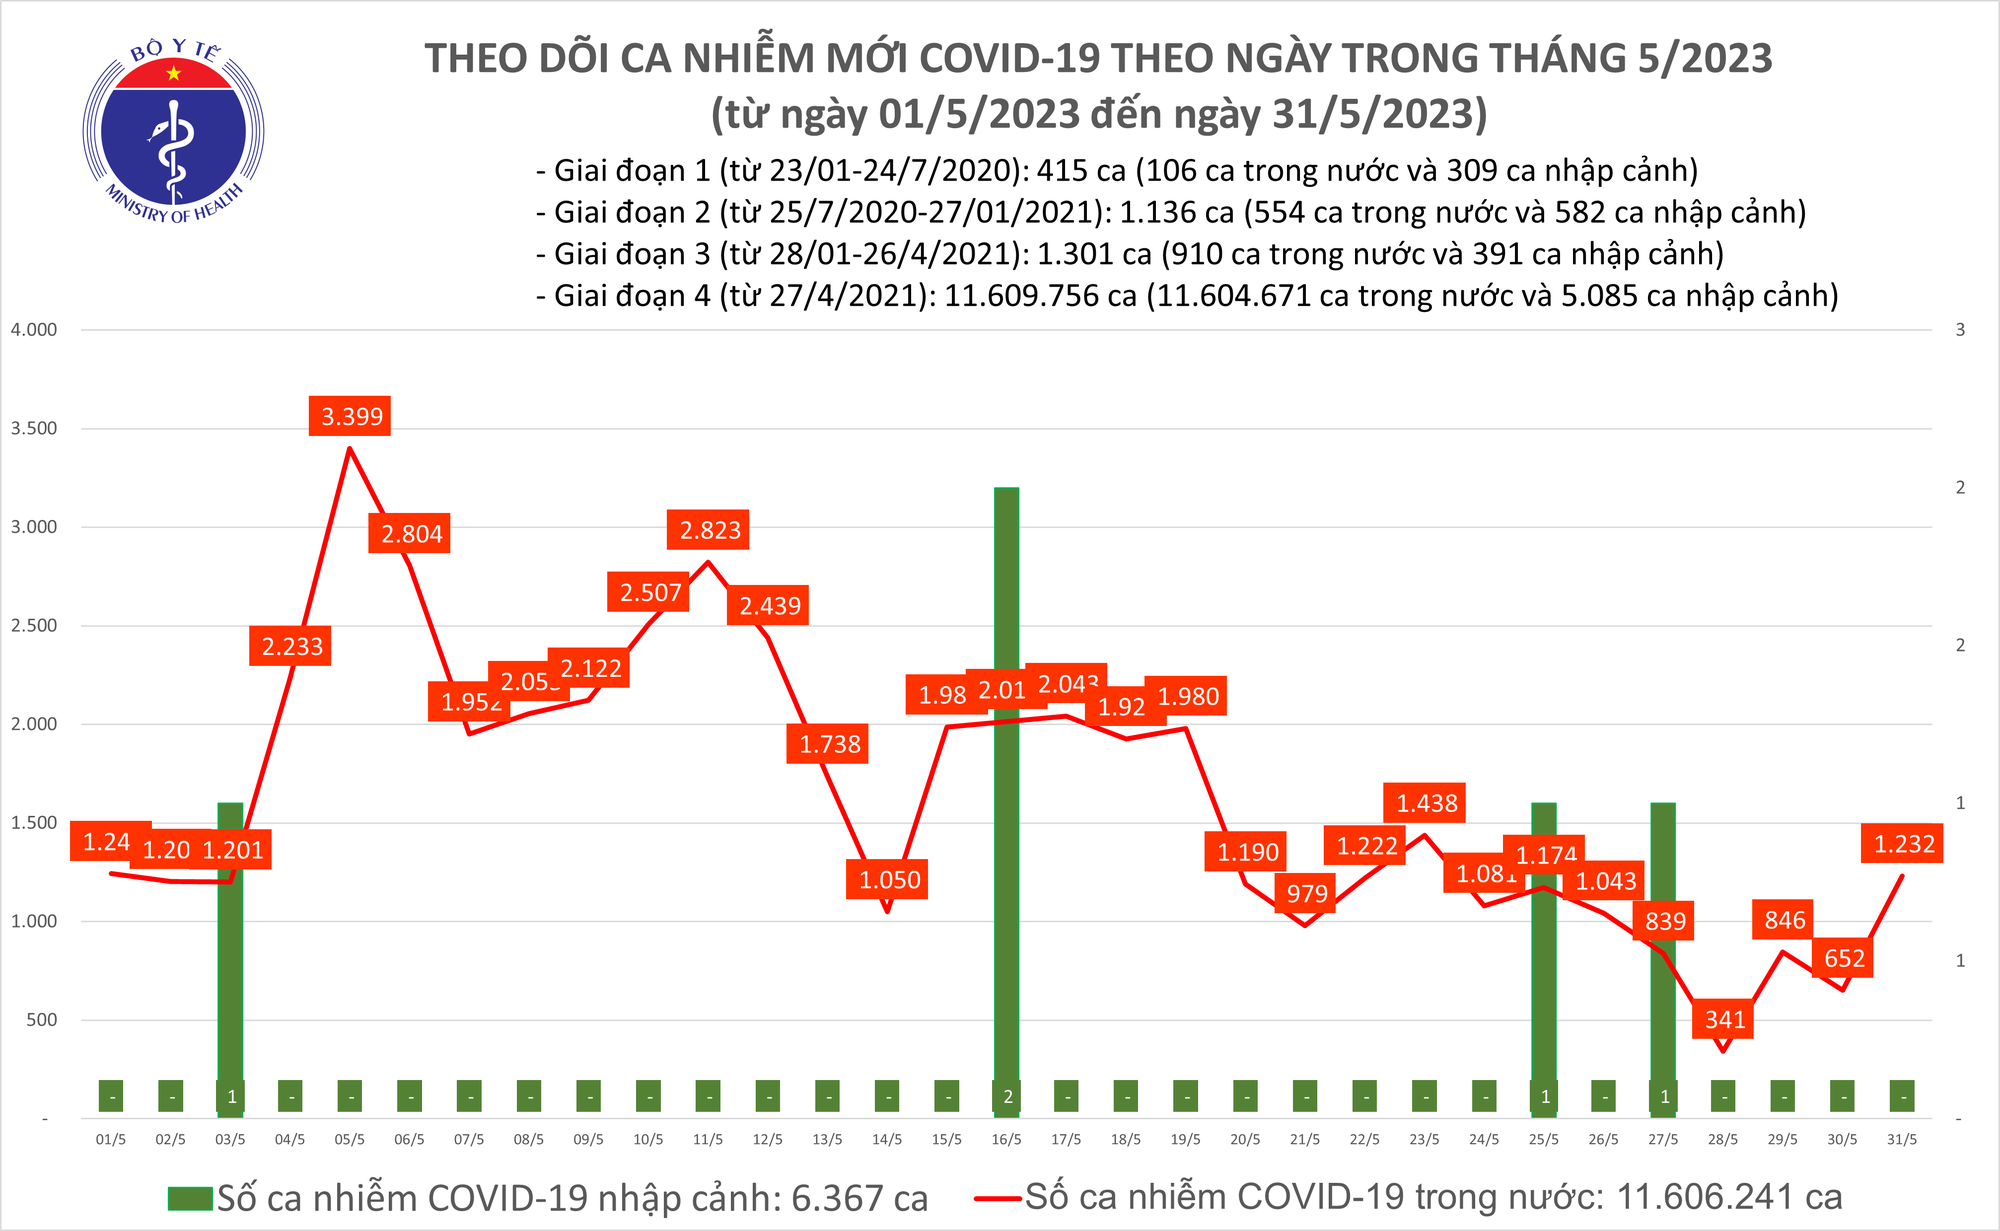 Ngày 31/5: Số mắc COVID-19 tăng mạnh lên 1.232 ca - Ảnh 2.